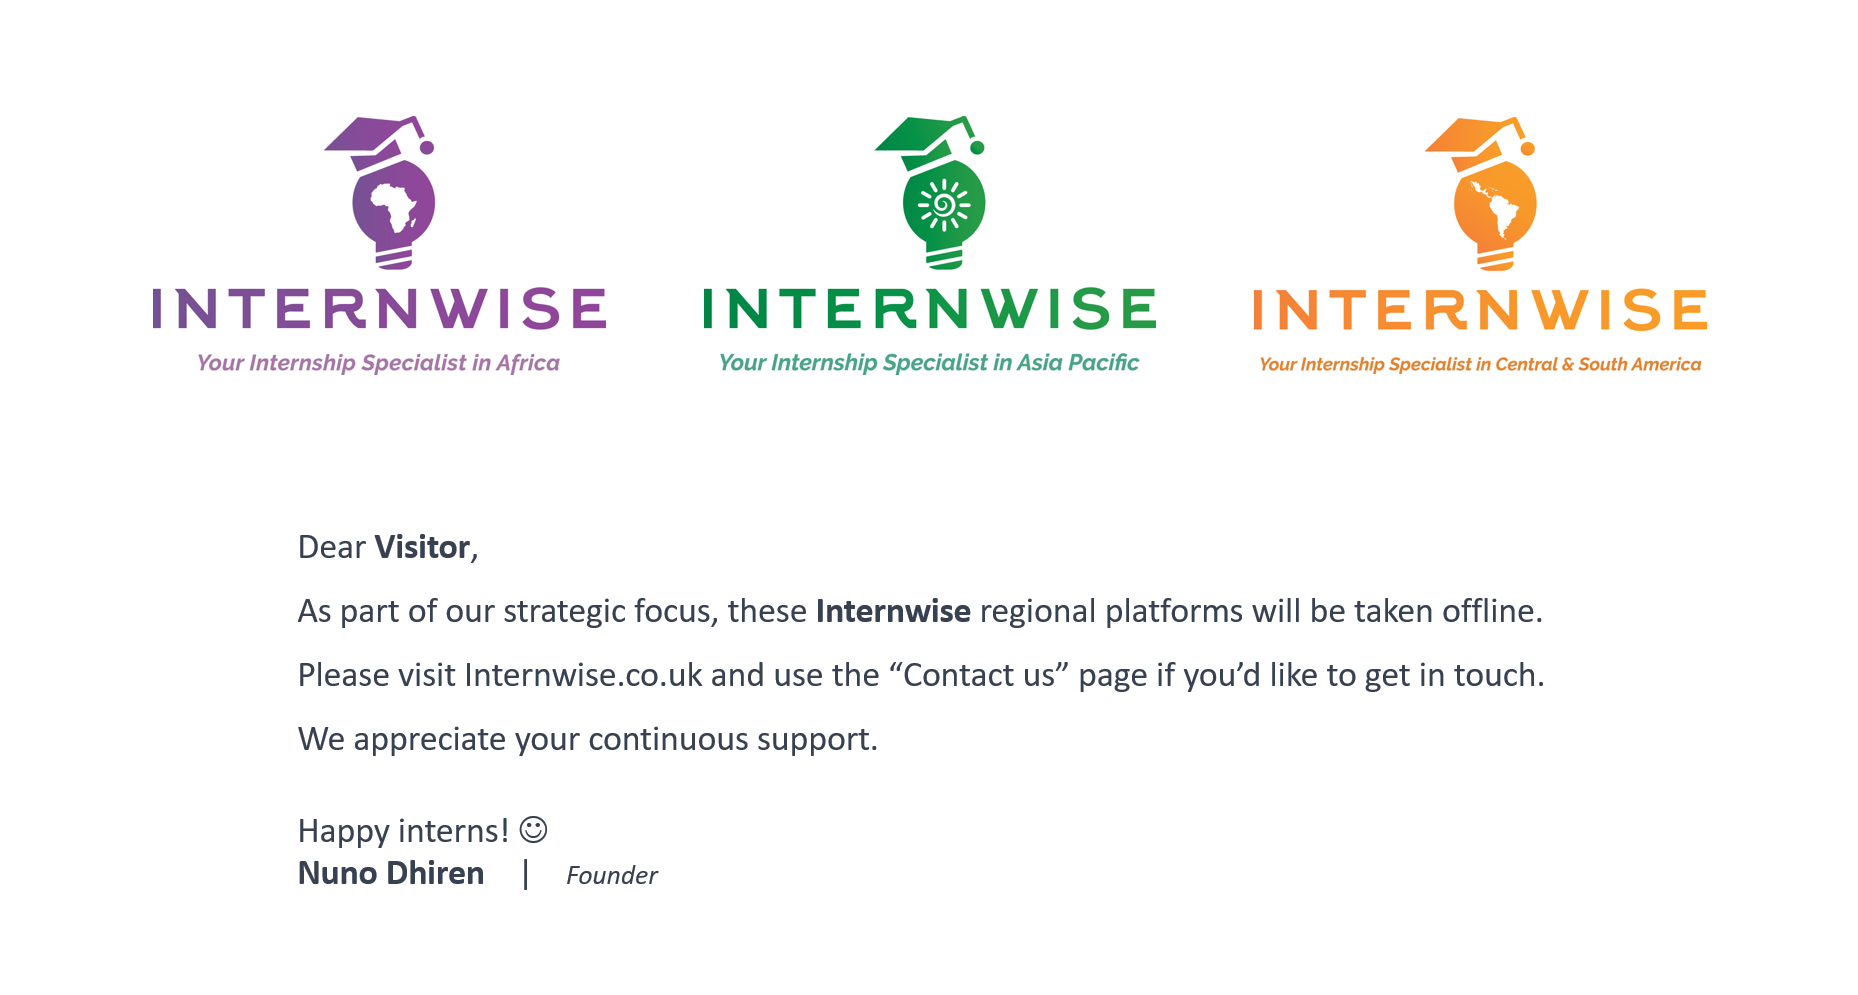 Internwise internship in Africa